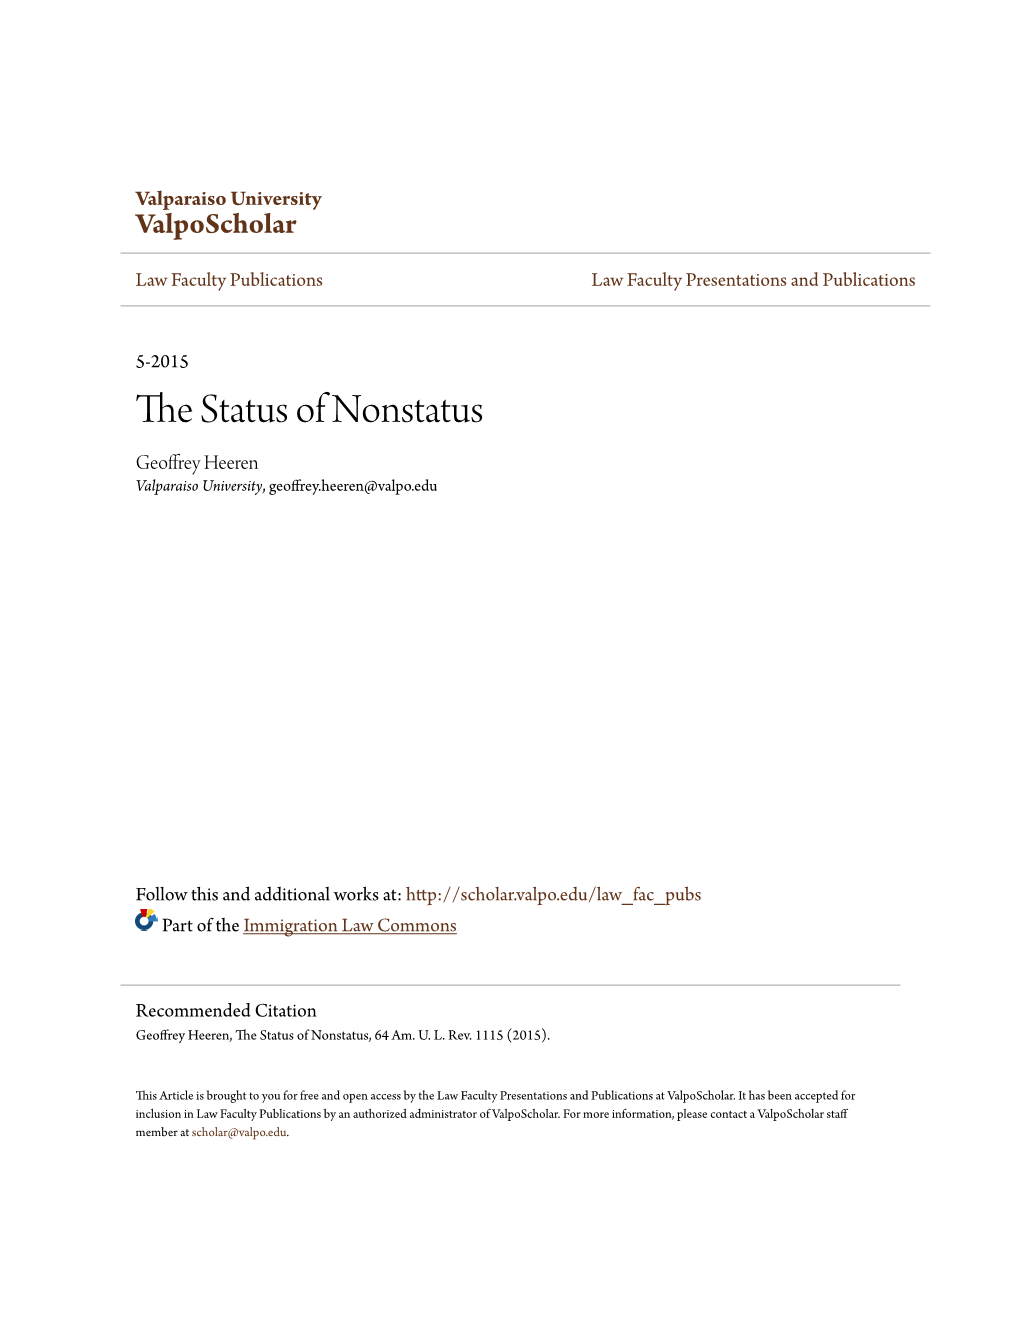 The Status of Nonstatus